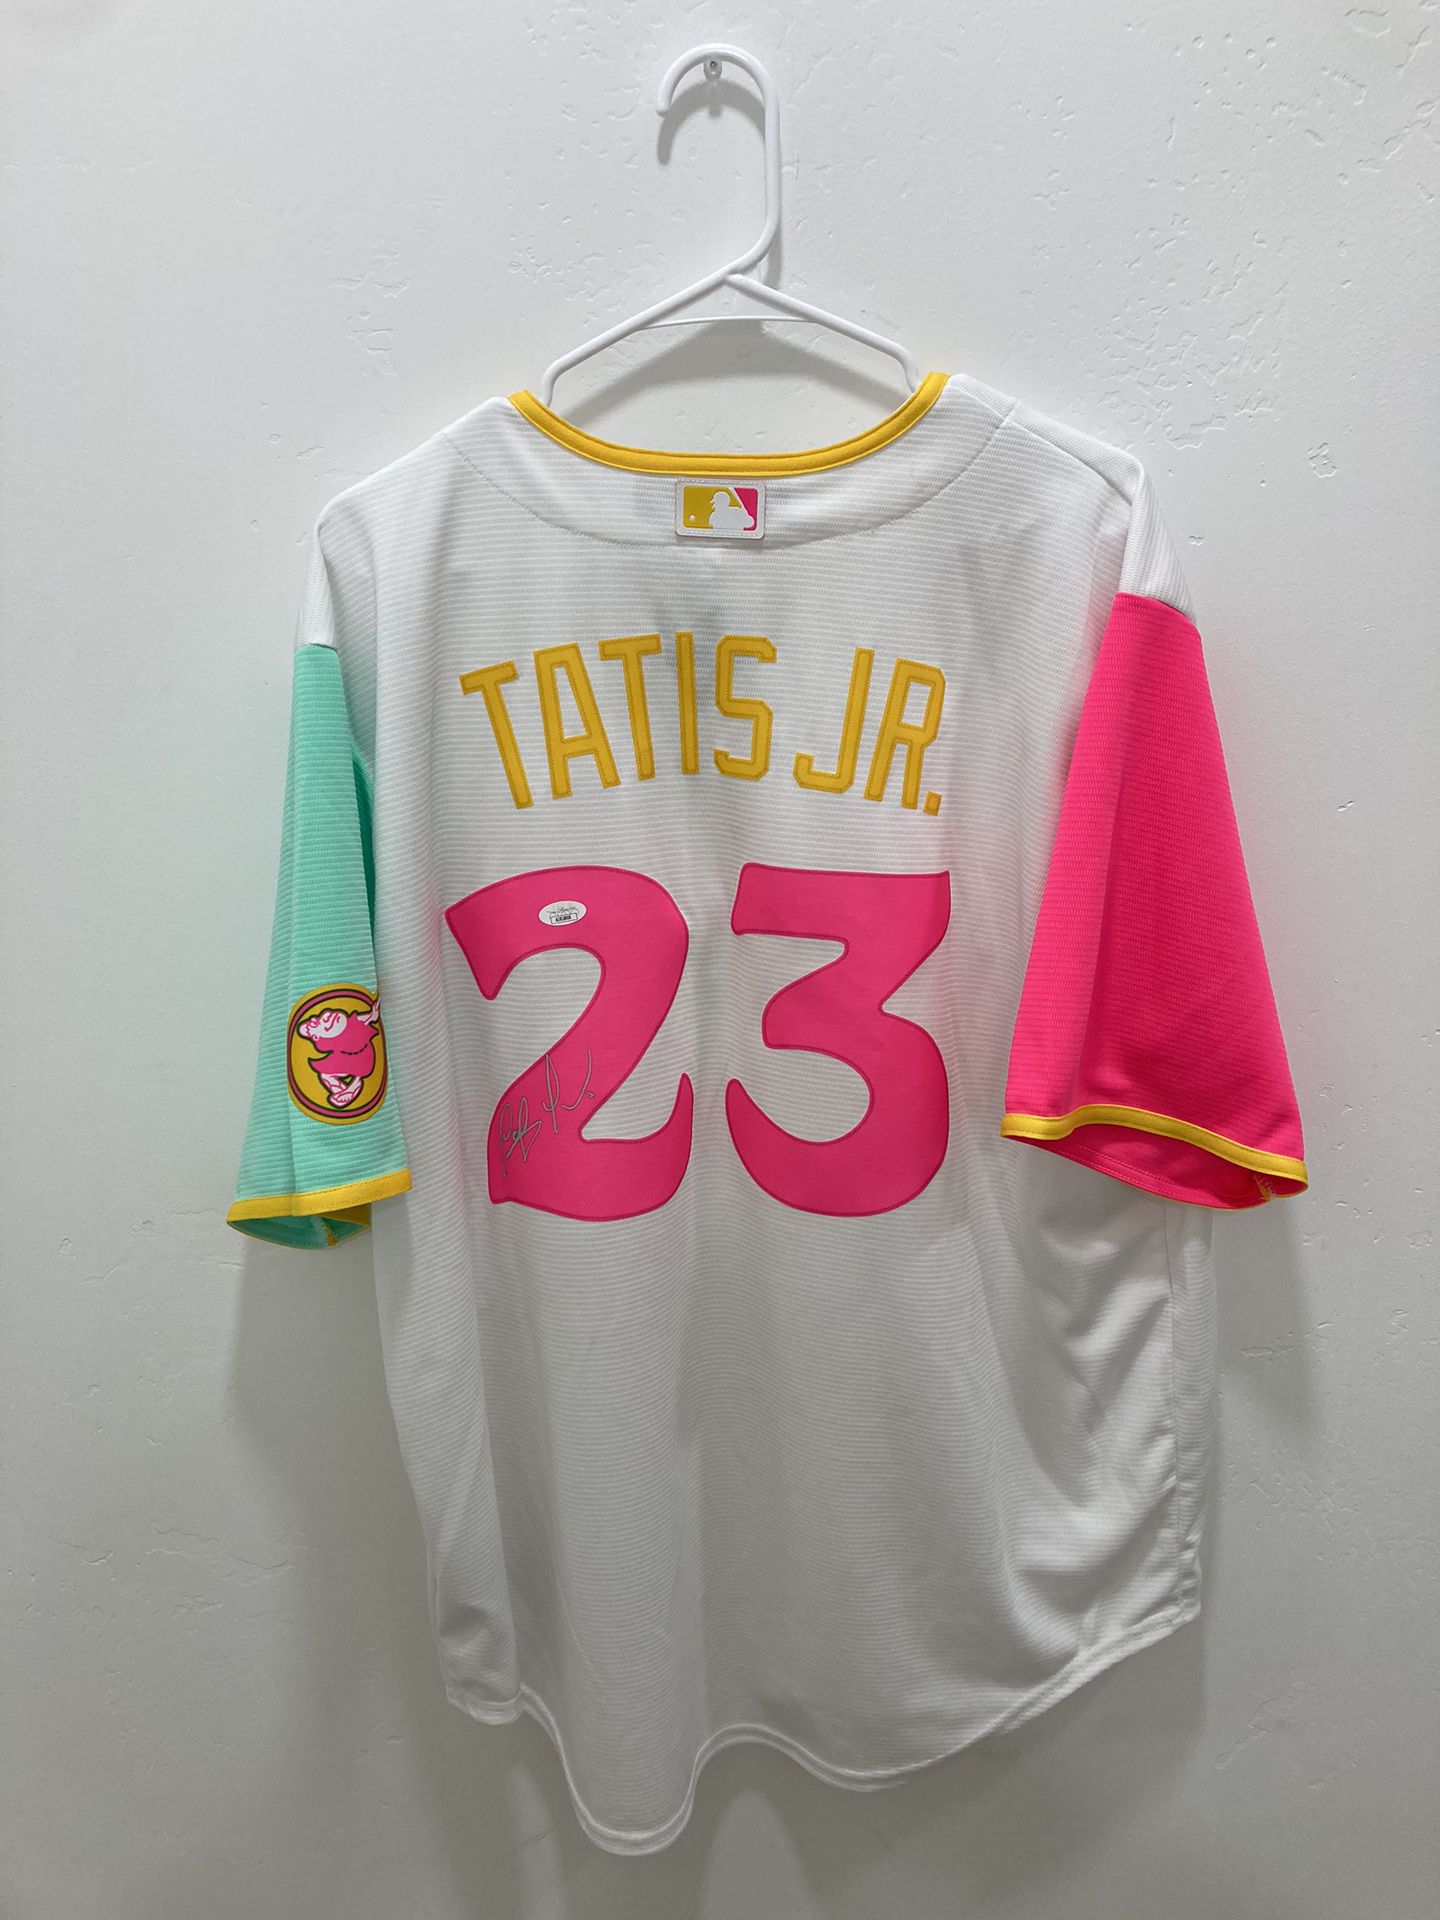 tatis city connect jersey